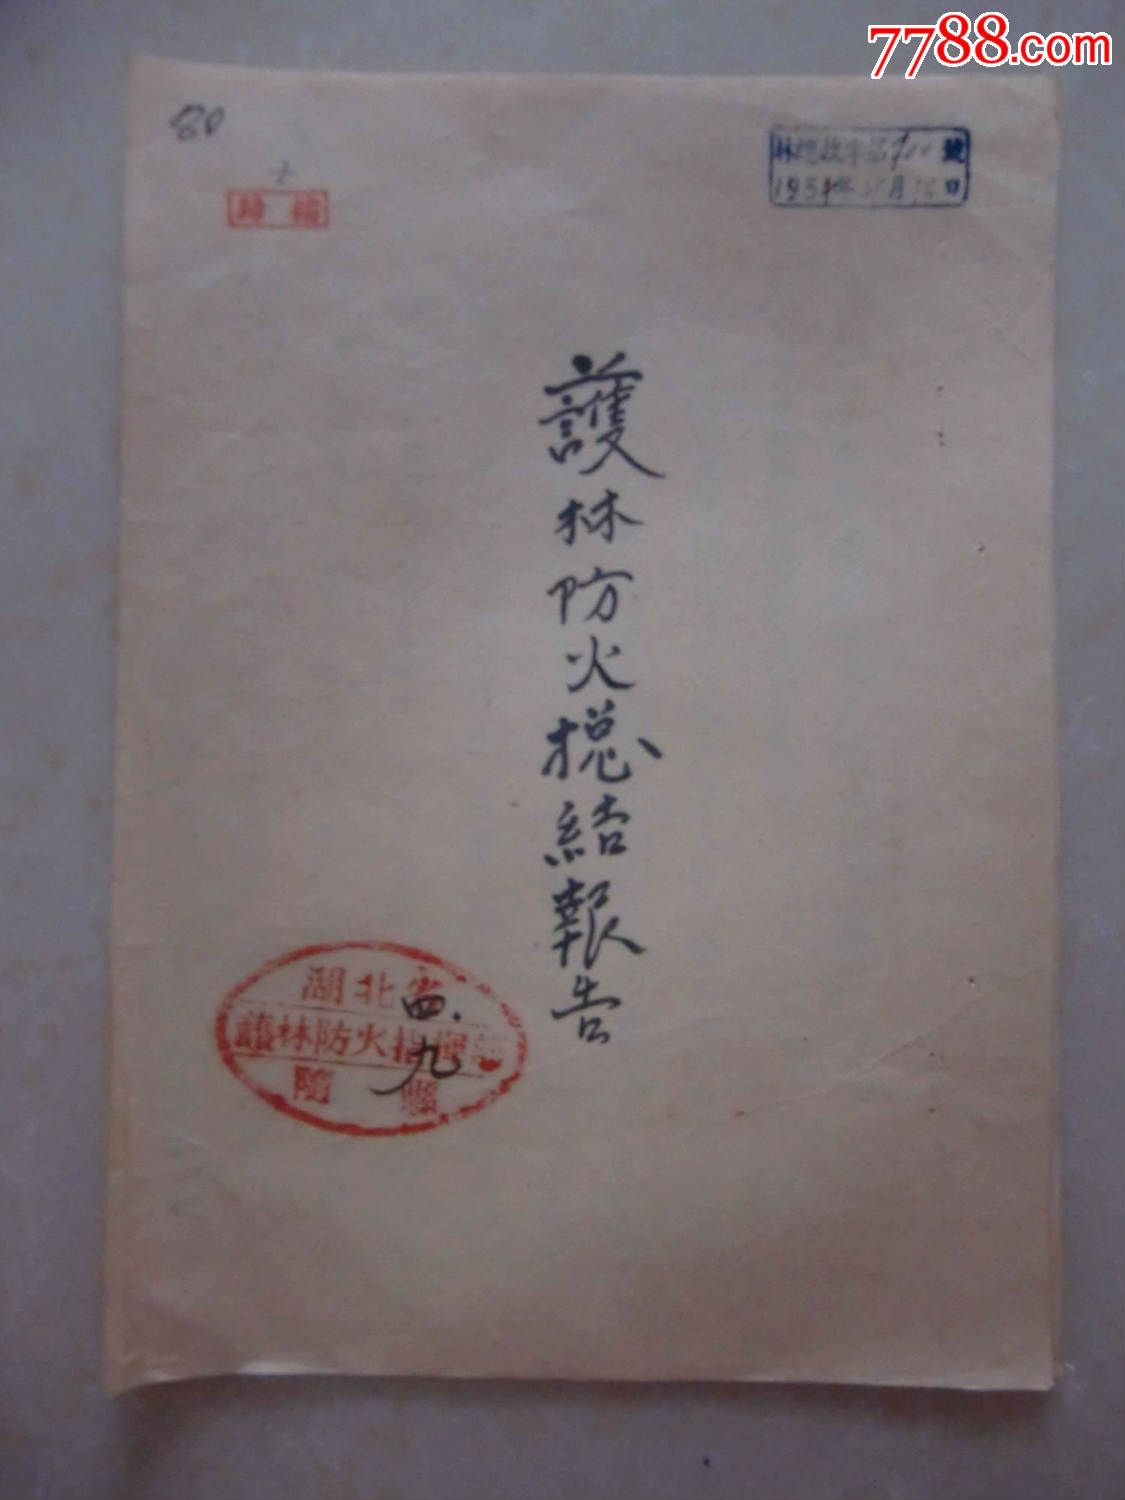 1954年随县护林防火总结报告-价格:50元-se30